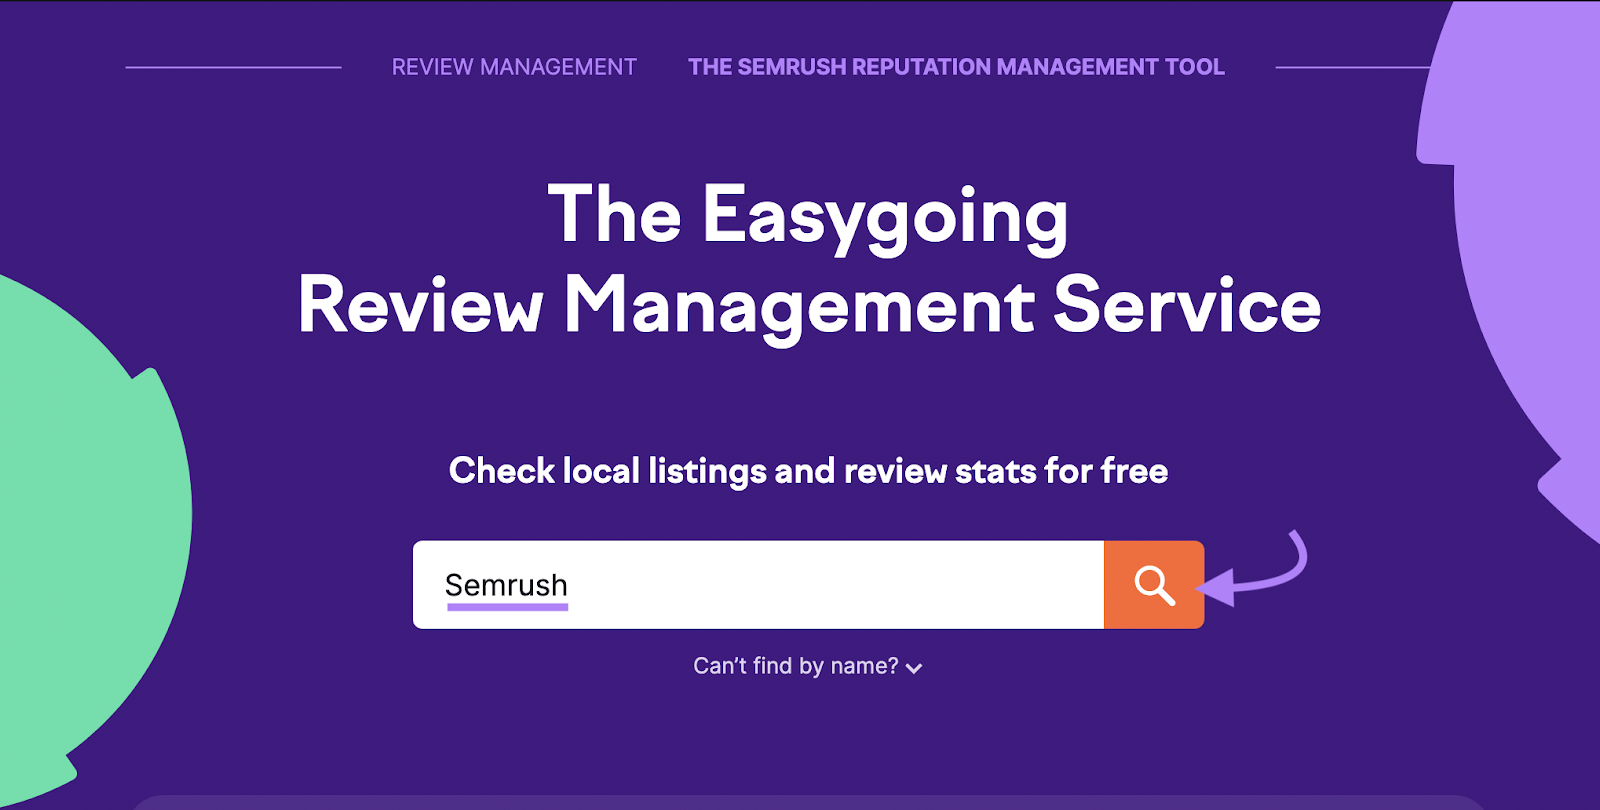 "Semrush" entré dans la barre de recherche de Review Management